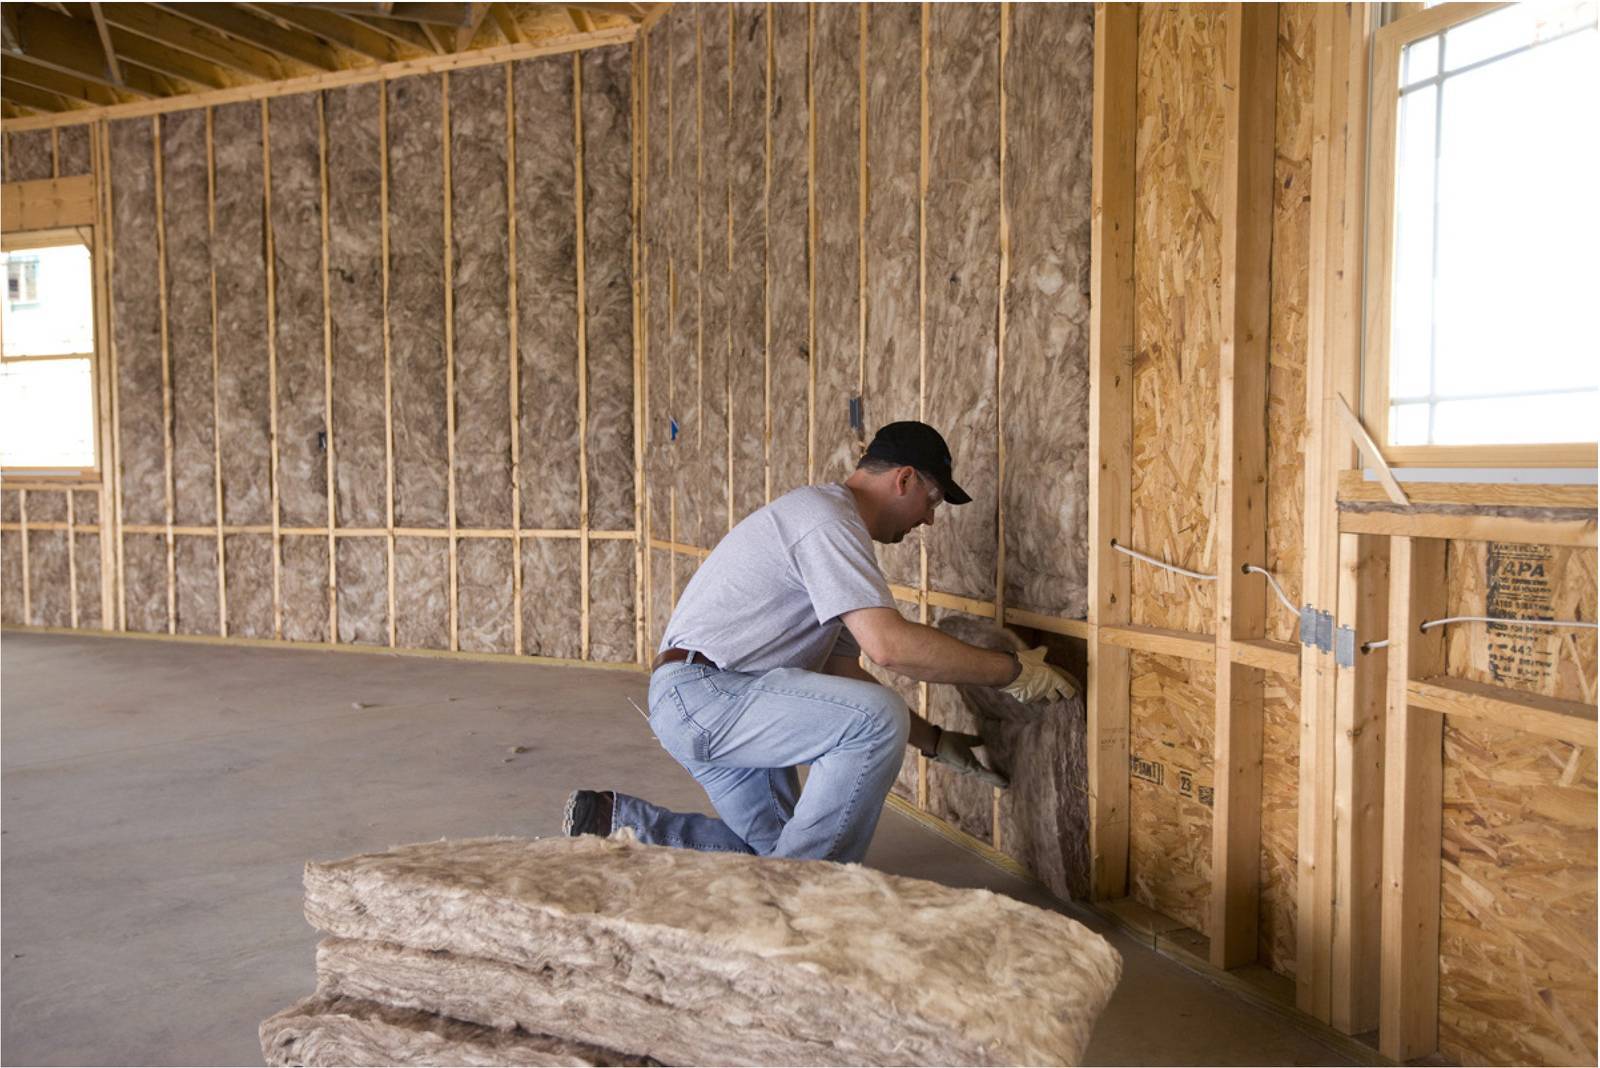 Утепление стен изнутри в частном доме своими руками: правильная внутренняя теплоизоляция стен при помощи плит и панелей утеплителя